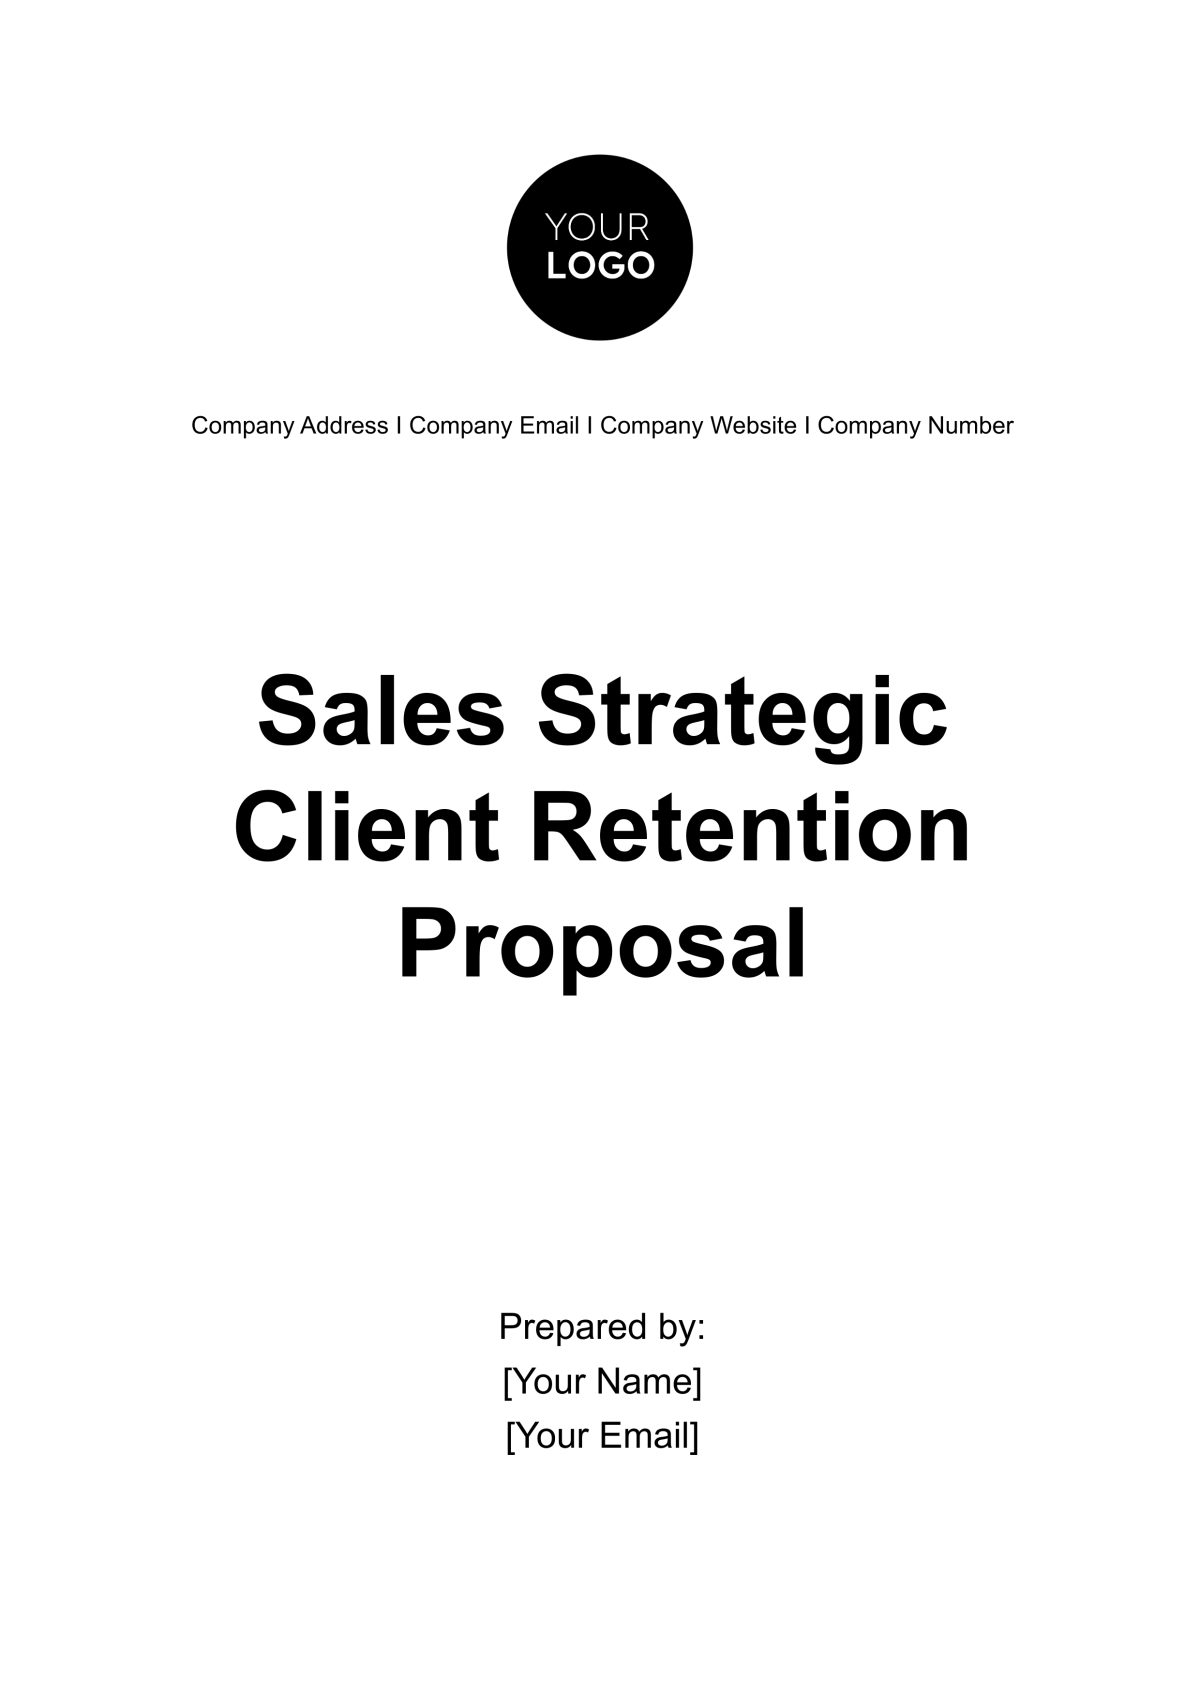 Sales Strategic Client Retention Proposal Template